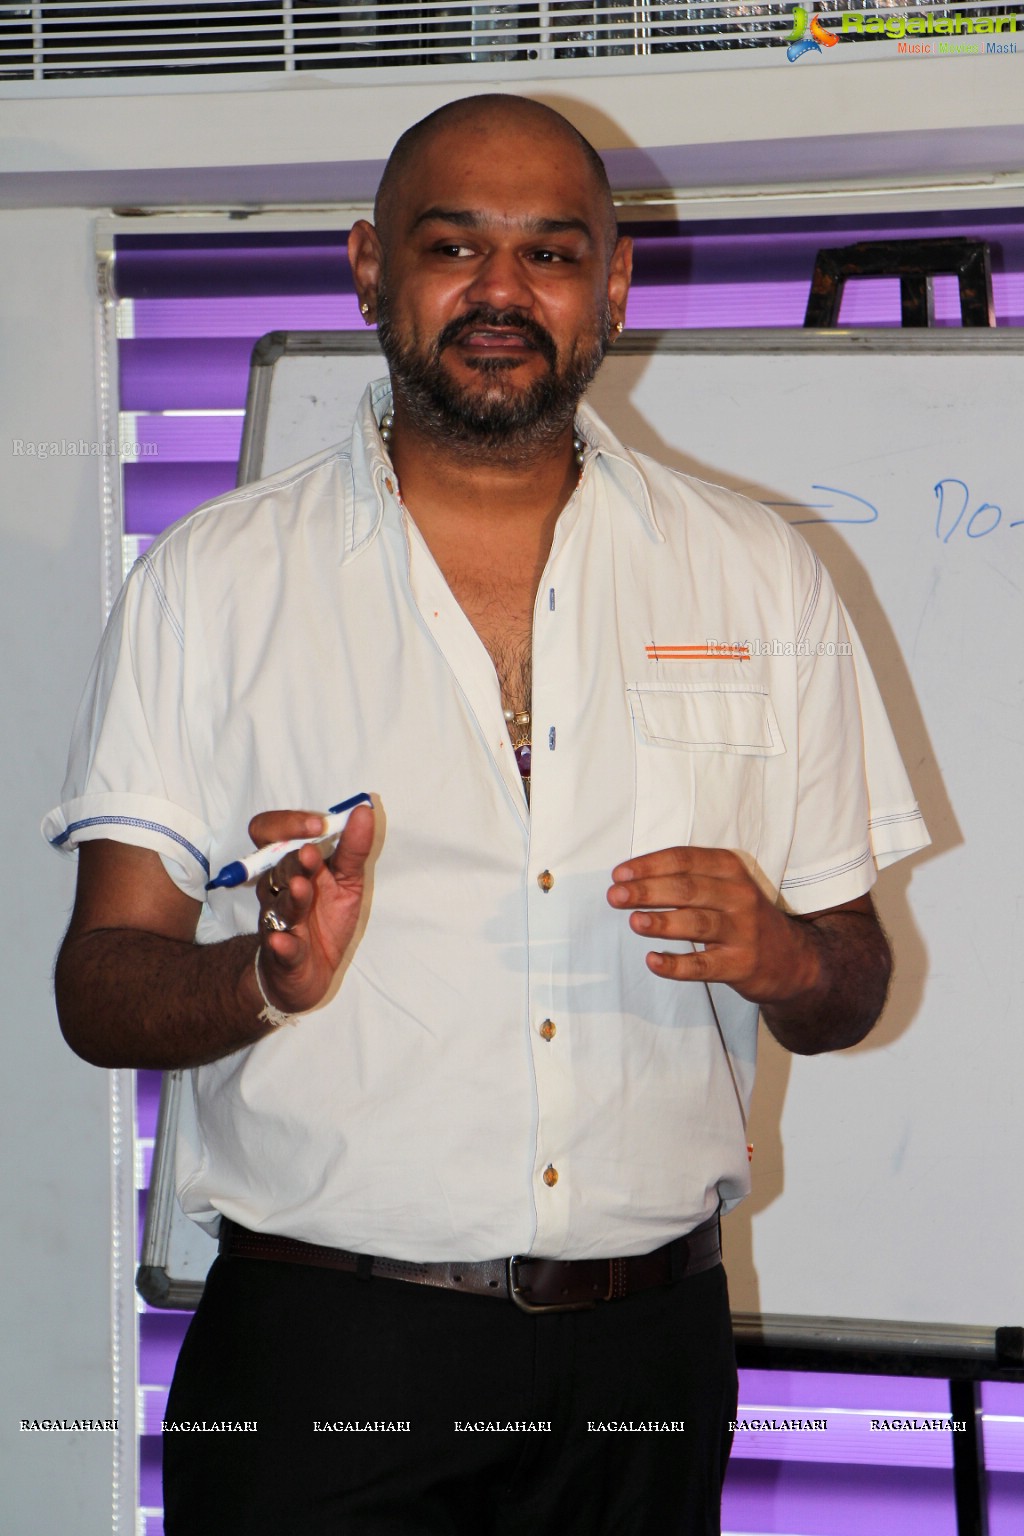 One Day Workshop for IARD 6020 by Shravan Kumar Ramaswamy